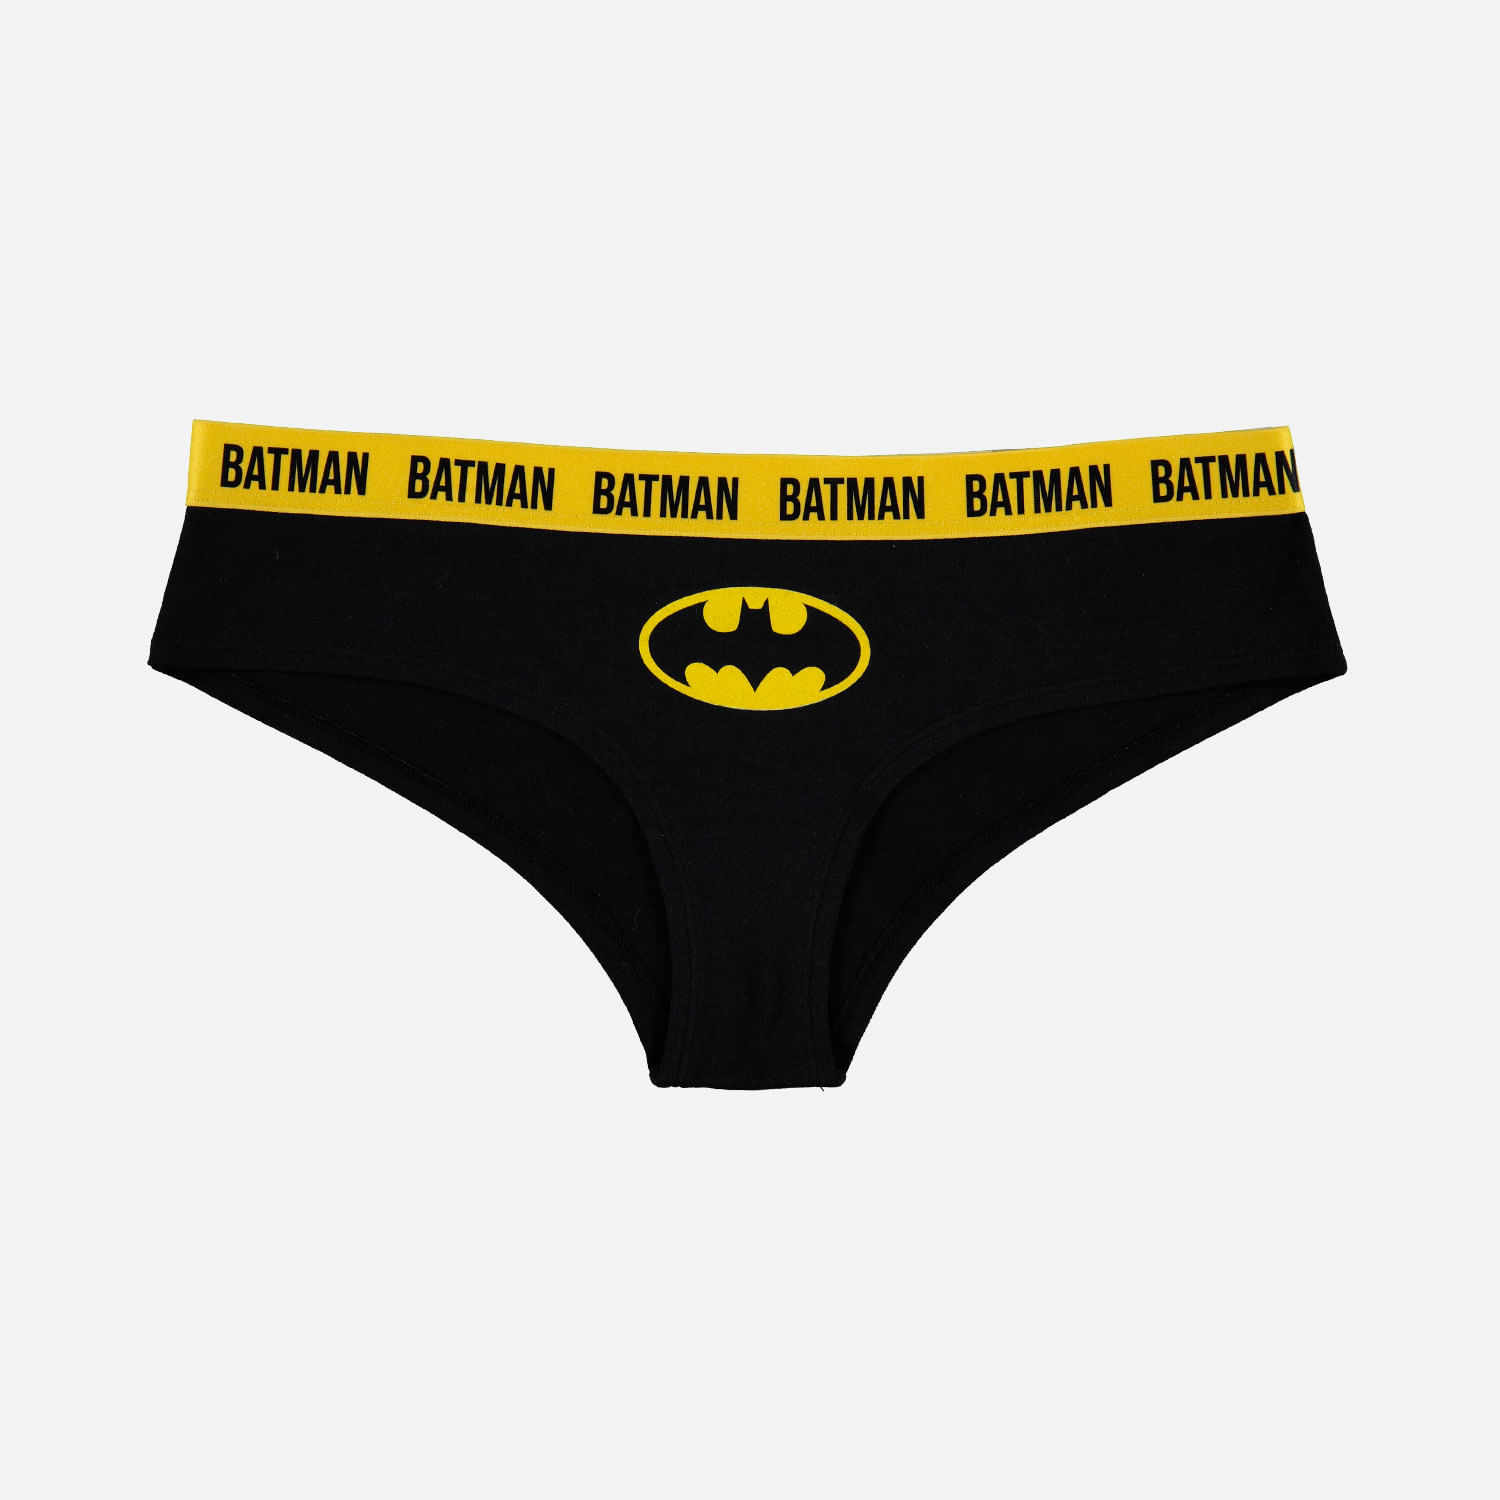 Ropa y Camisetas de Batman para Hombre y Mujer I Movies